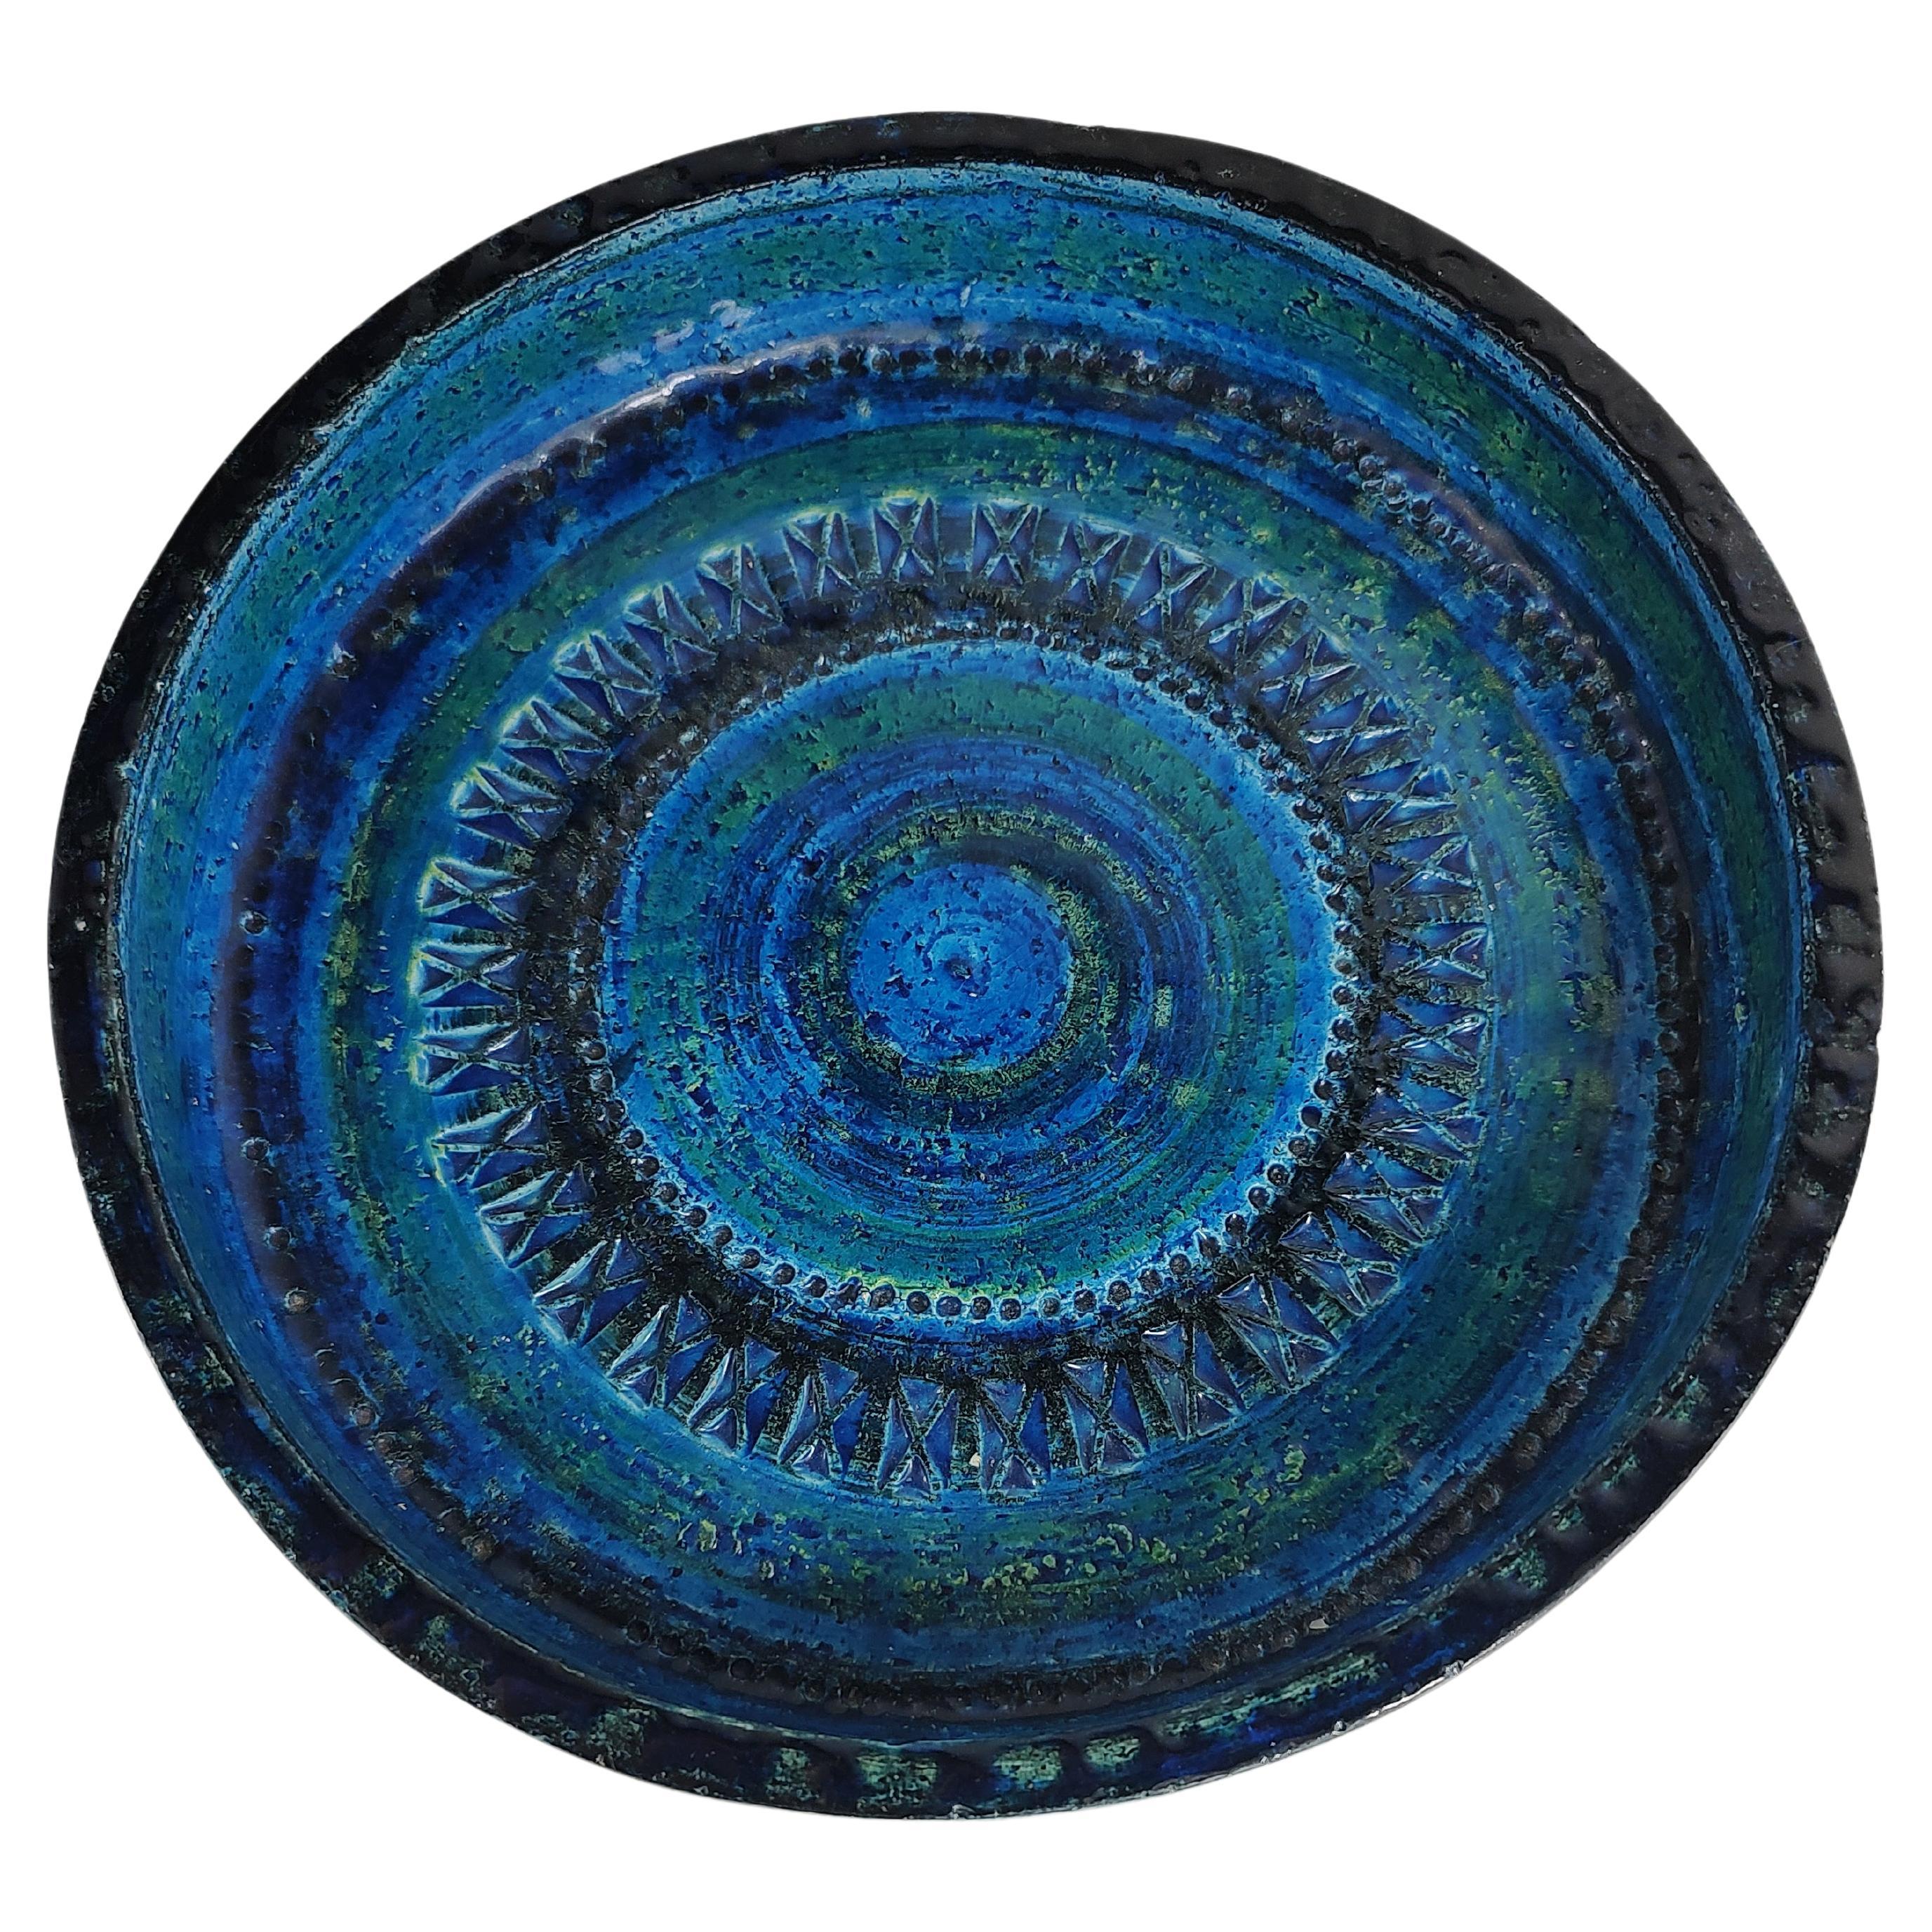 Fantastische große (10,5) Zoll x 3 tiefe Schale von Aldo Londi für Bitossi aus Italien. Rimini Blue ist eine tiefe, intensive, aber ruhige Farbe mit archaischen Eindrücken, die die Schale einfassen. In ausgezeichnetem Vintage-Zustand ohne sichtbare